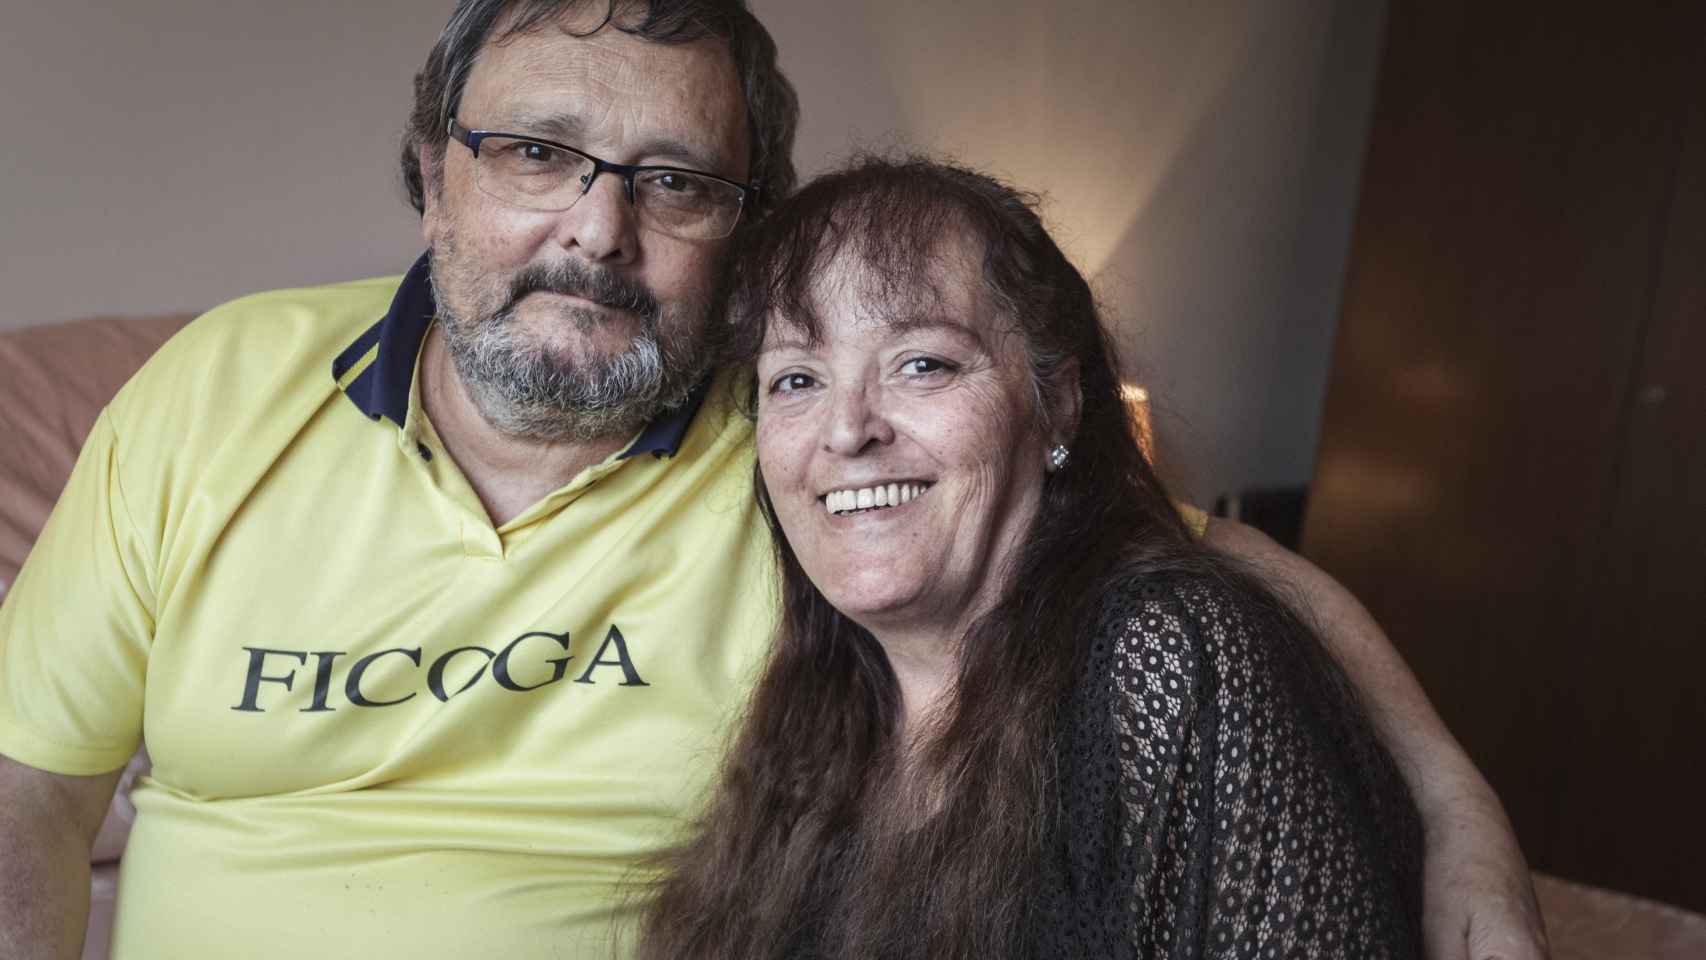 Daniel Moya Peña y Rosa María Moya Peña son hermanos biológicos y llevan 40 años como pareja. Tienen dos hijos en común.